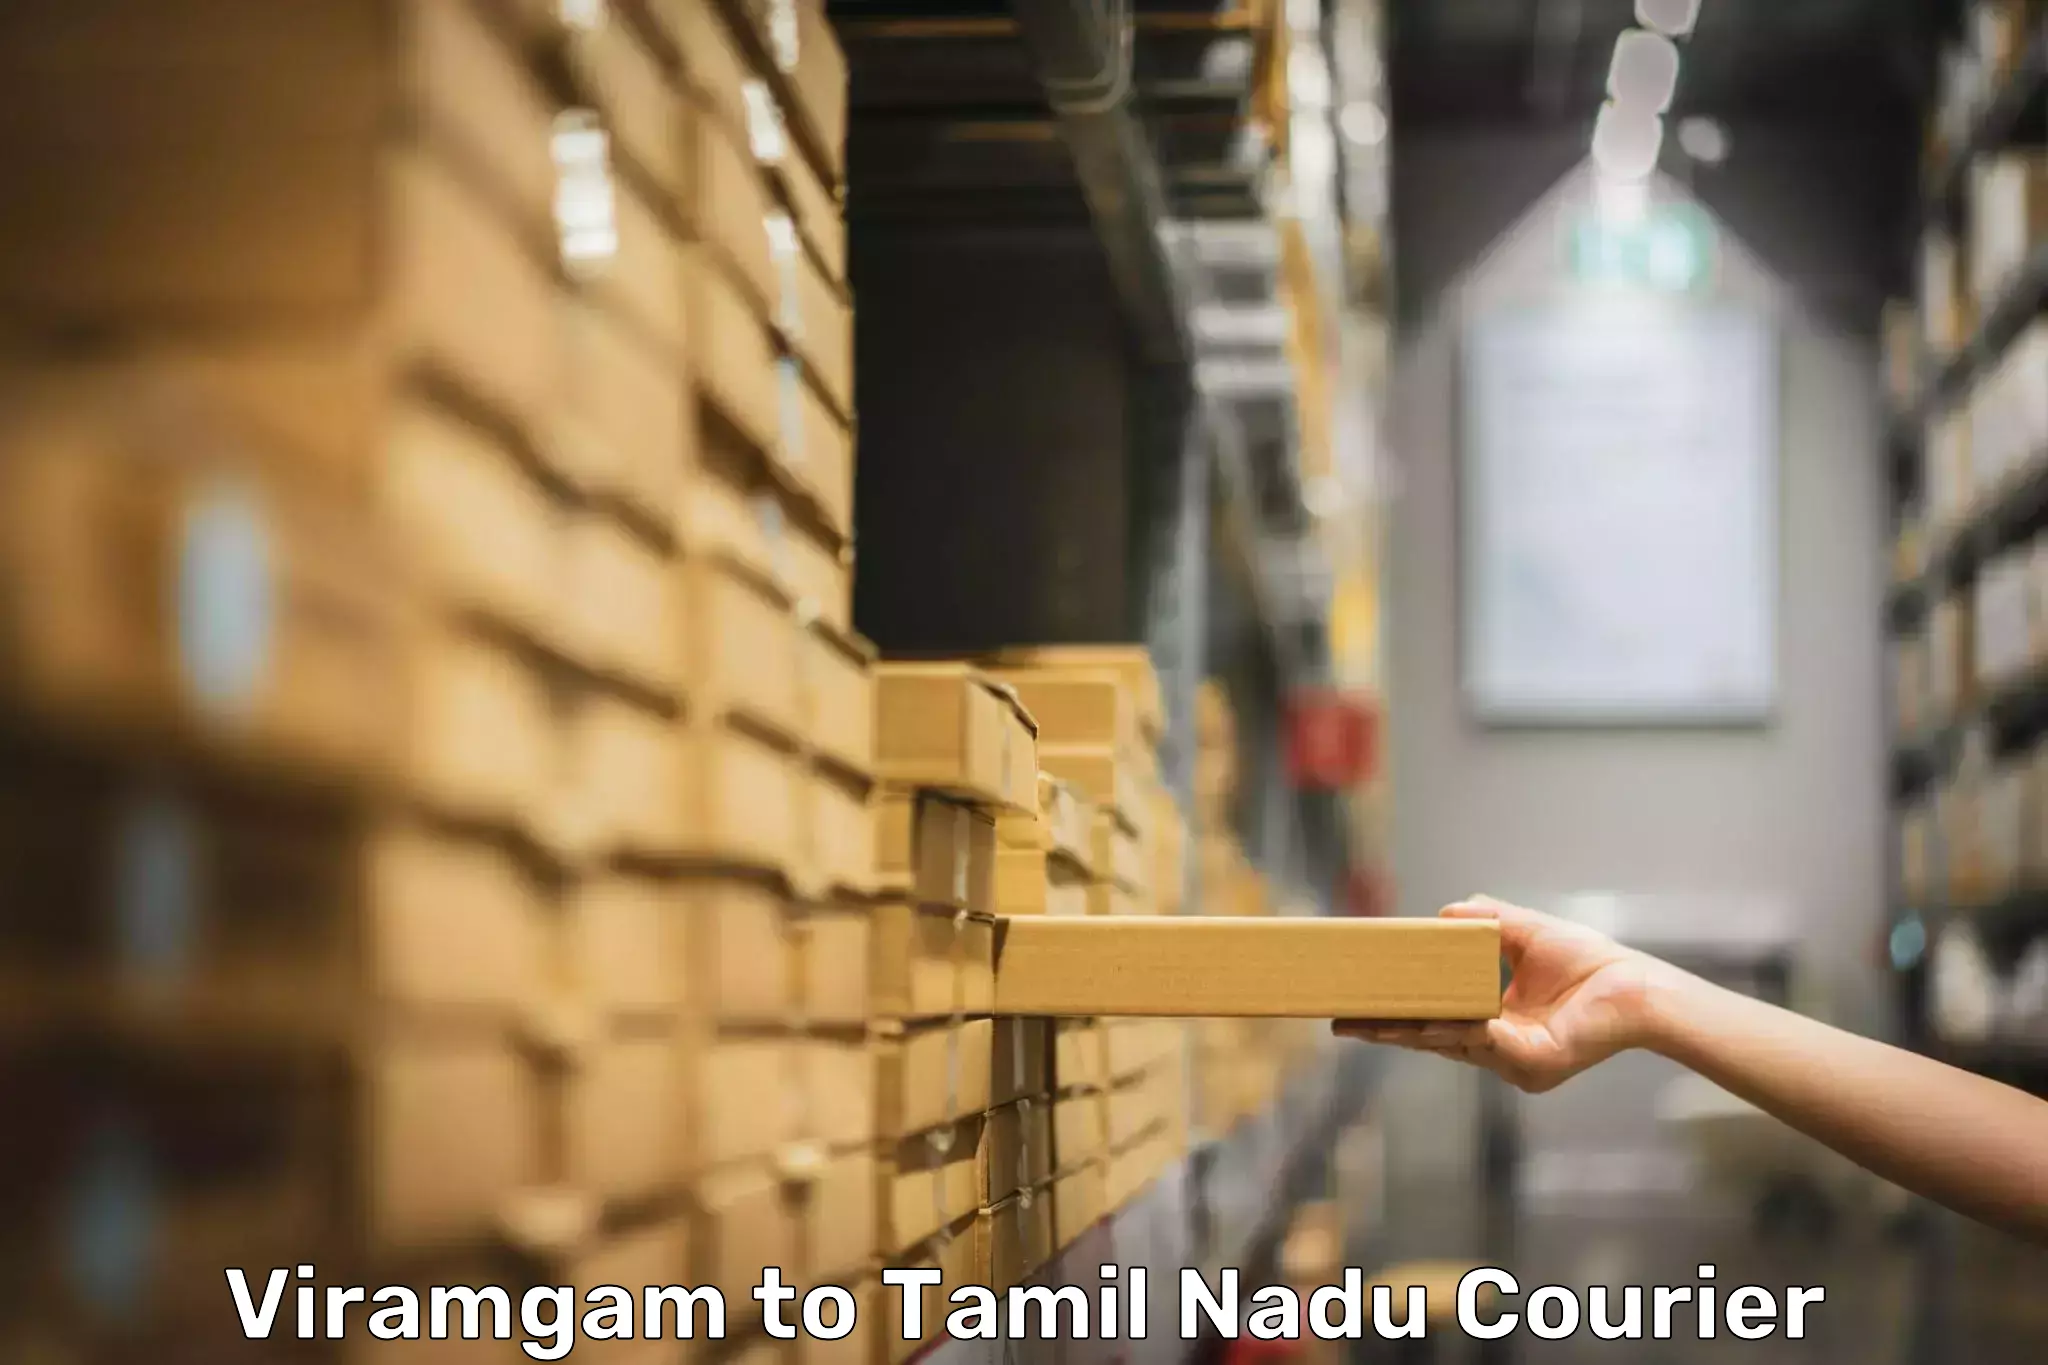 Baggage transport innovation Viramgam to Tamil Nadu